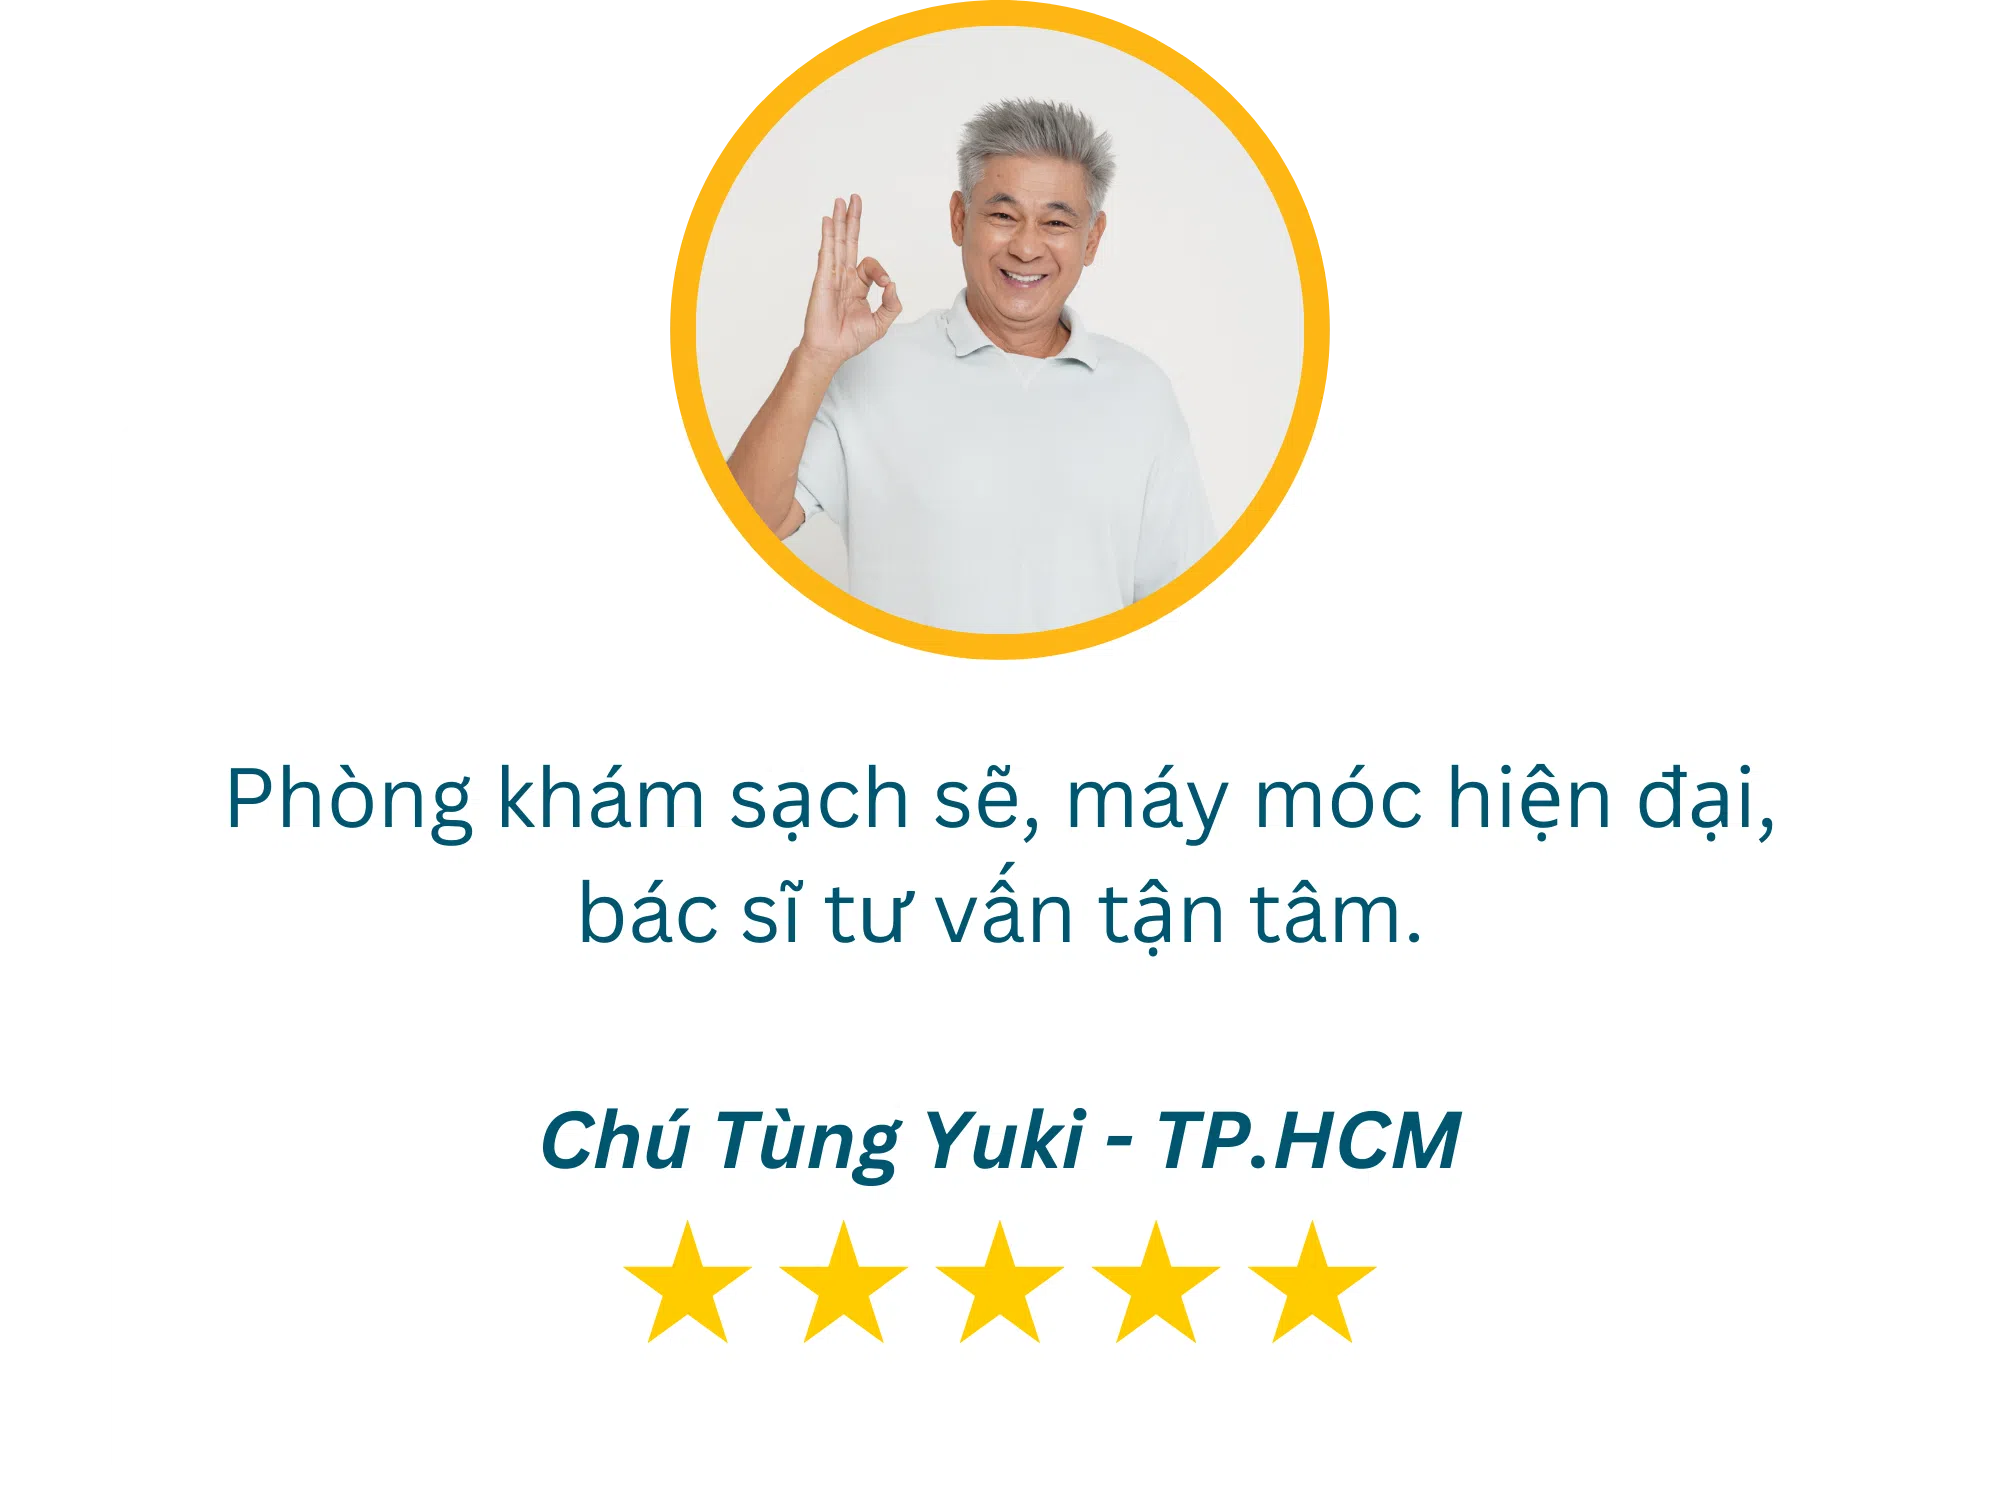 Review Tầm Soát Ung Thư Dạ Dày - 1